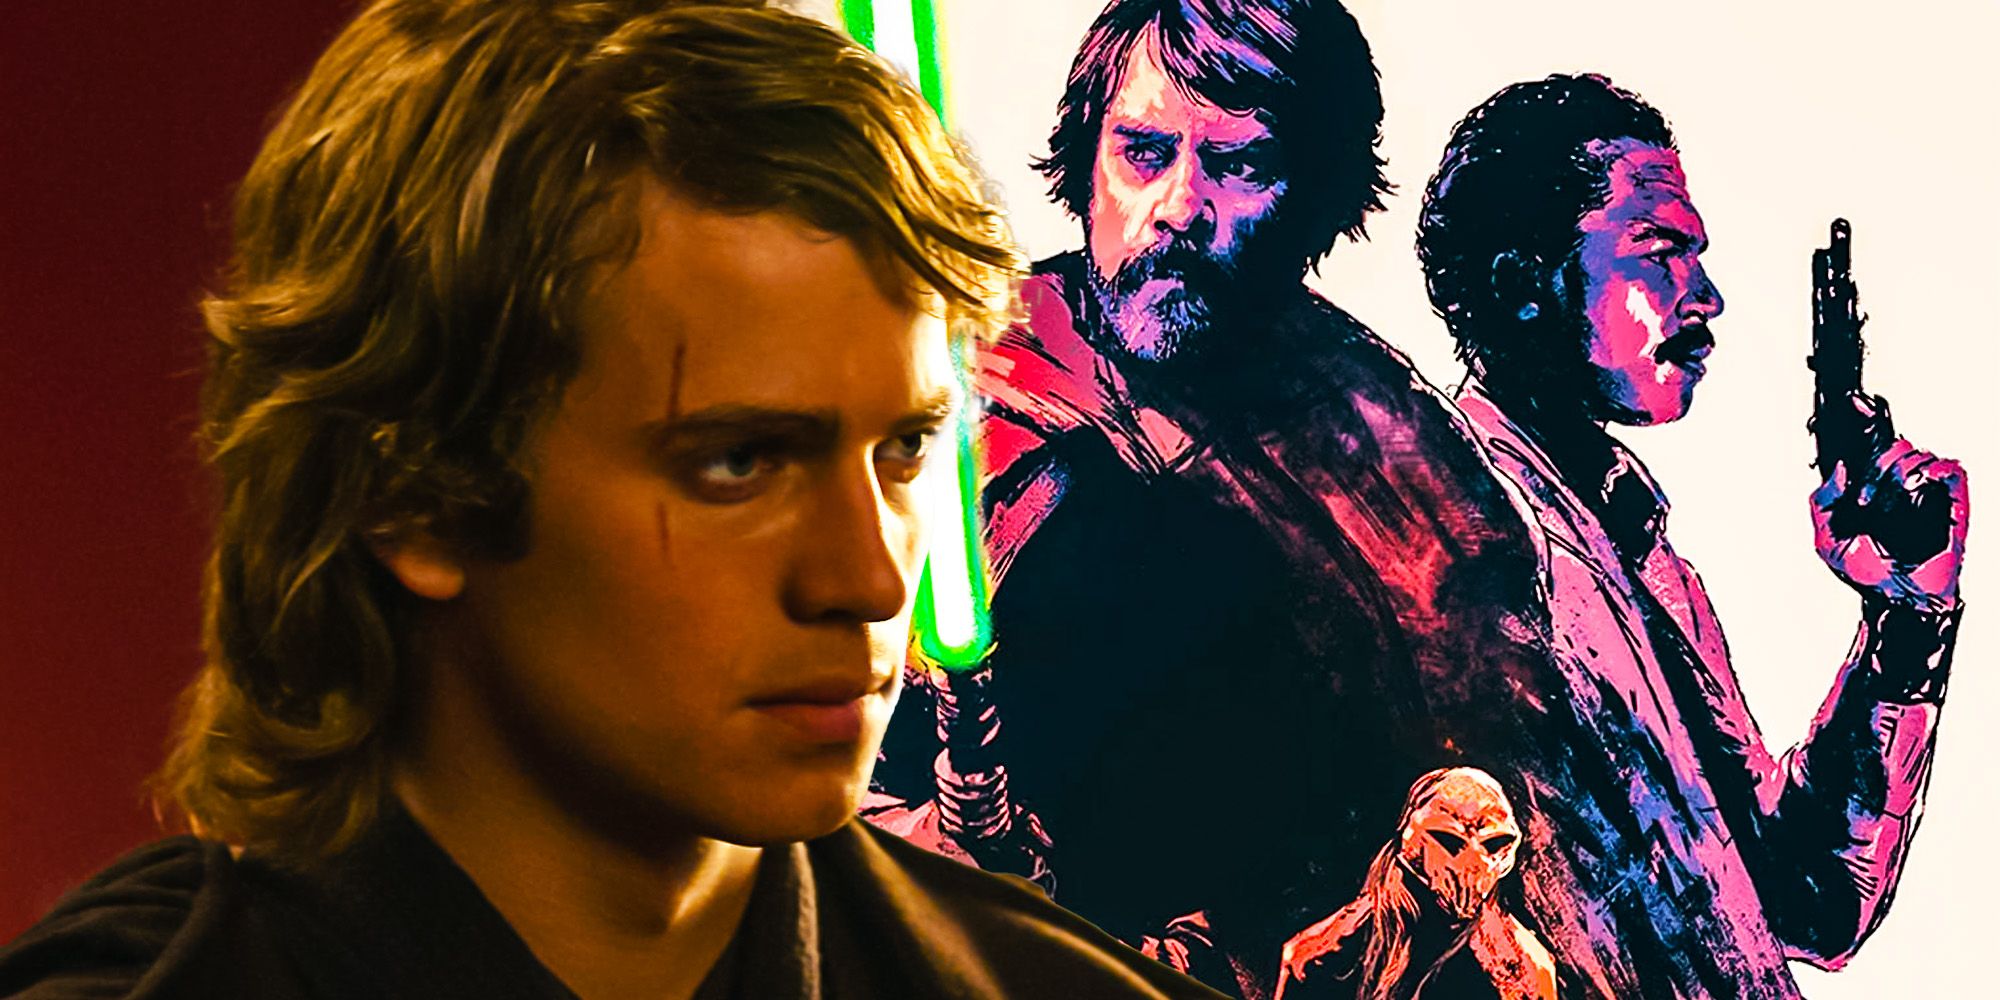 Anakin Skywalker, Luke Skywalker, and Lando in Star Wars